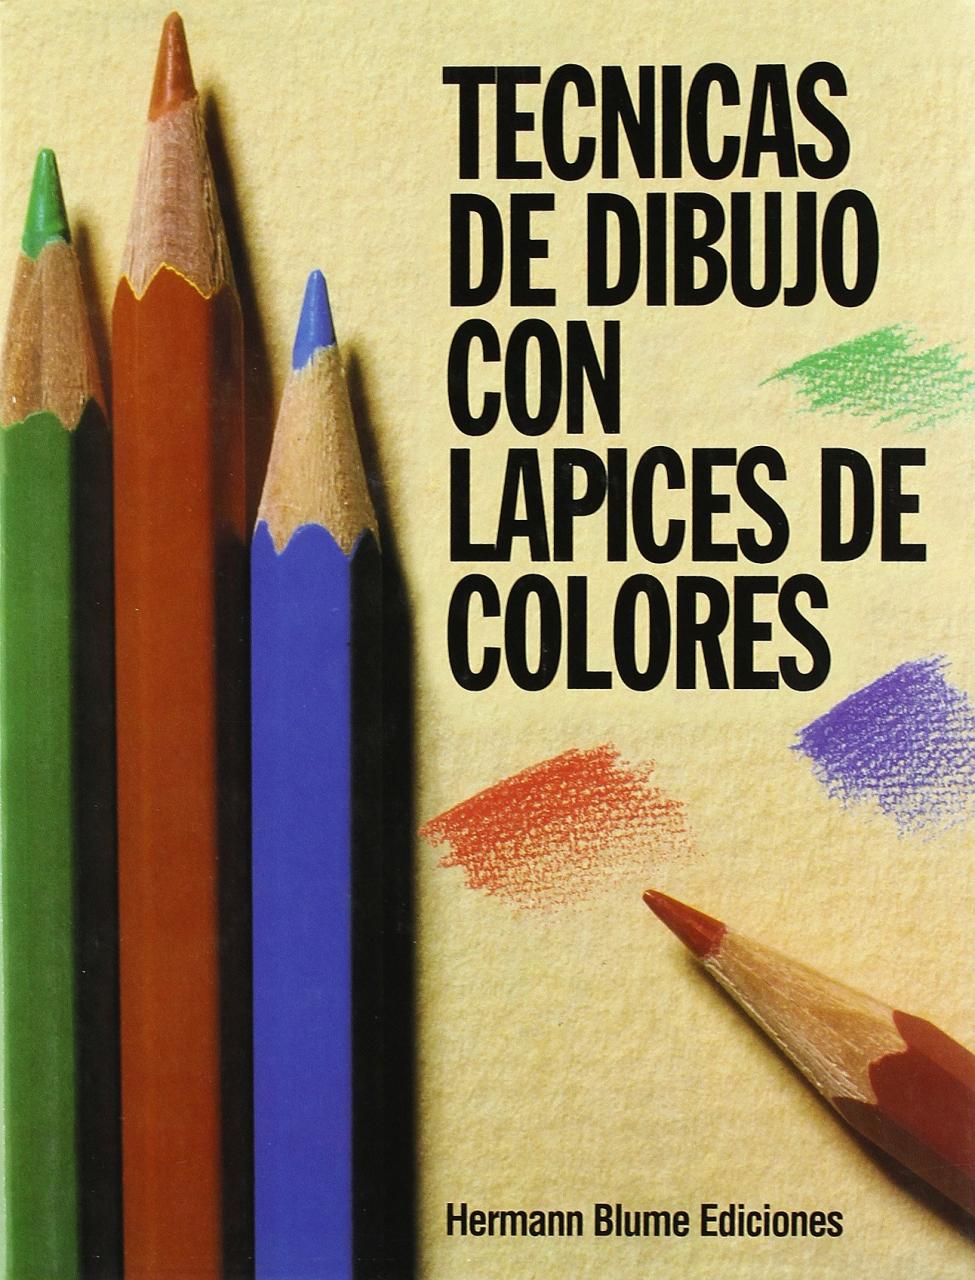 Técnicas de dibujo con lápices de colores: 24 Artes  técnicas y métodos:  Amazon - es: Hutton-Jamieson  Iain: Libros, dibujos de Con Lápices De Colores, como dibujar Con Lápices De Colores paso a paso